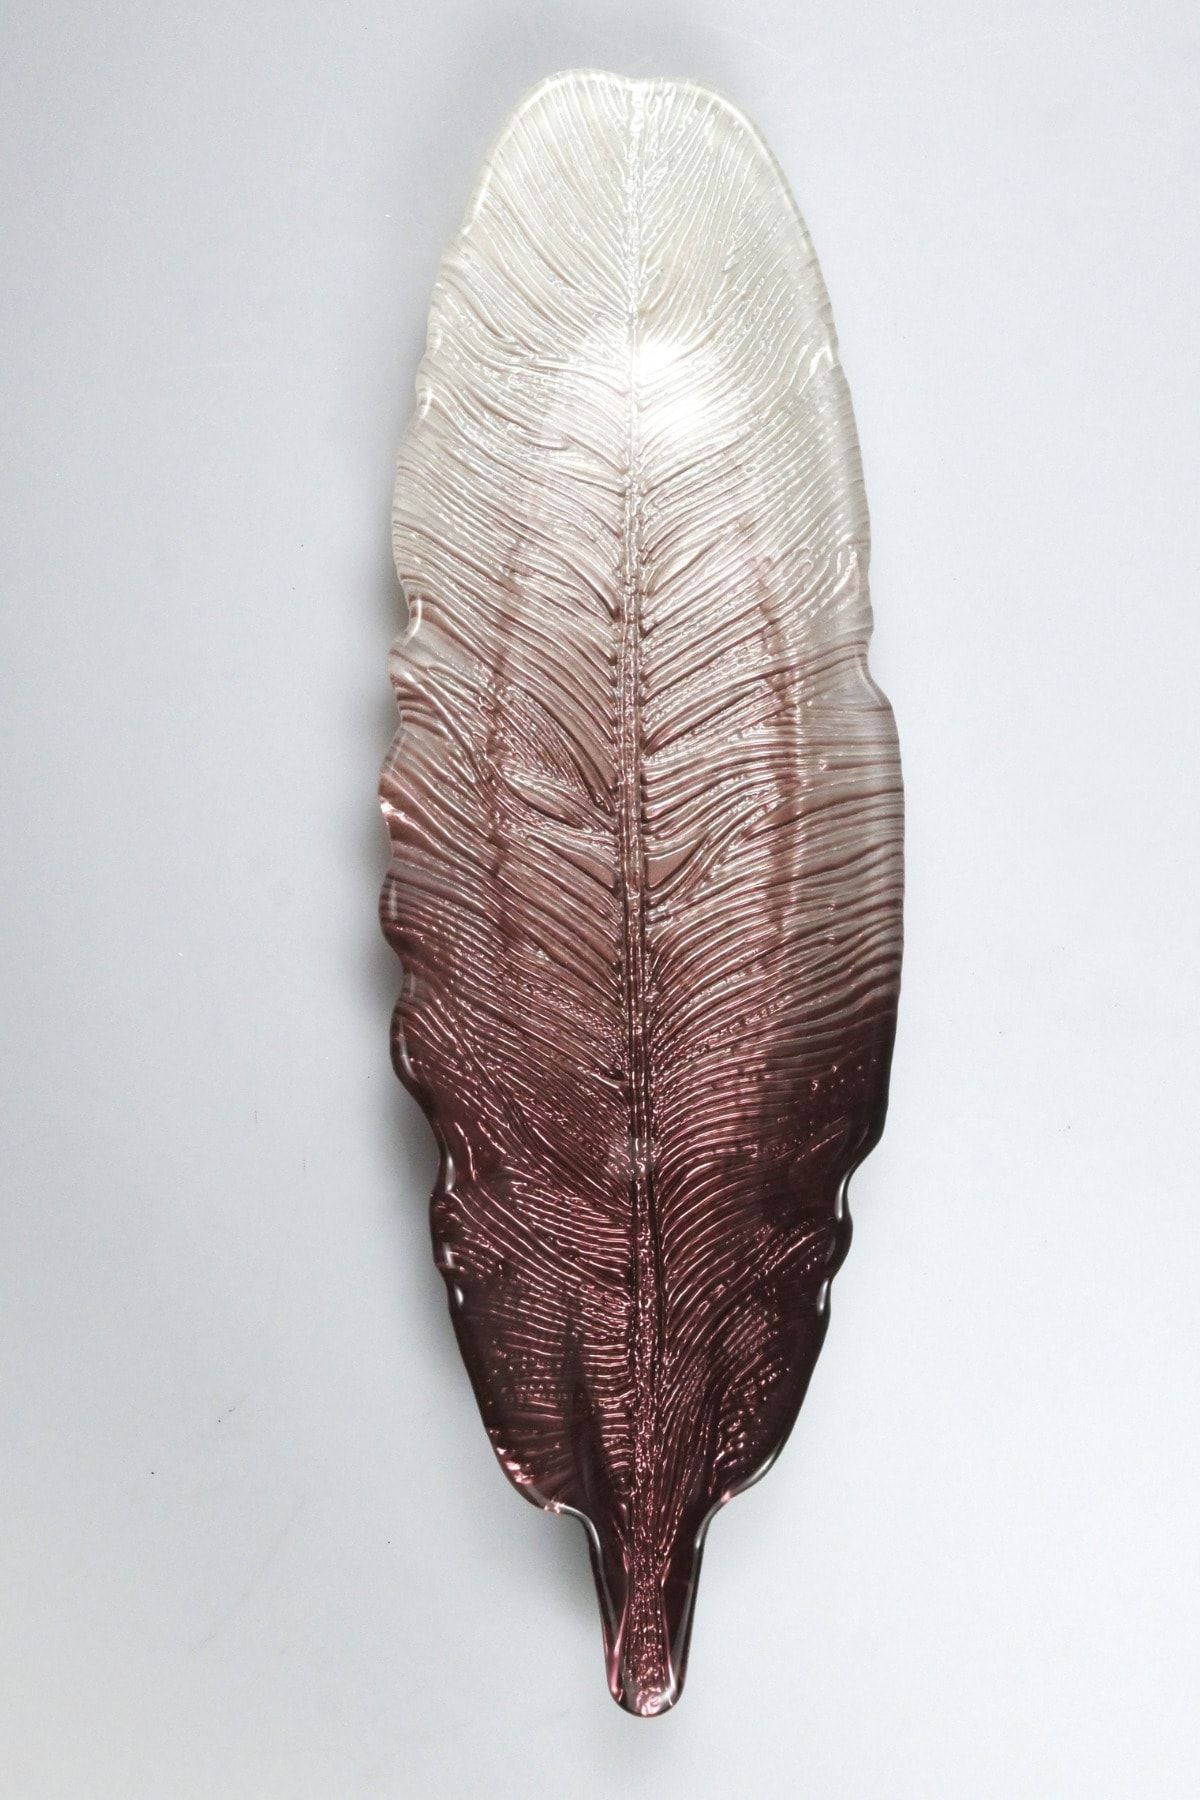 Heritage Mor Beyaz Geçişli Kuş Tüyü Dekoratif Cam Servis Sunum Tabağı Büyük Boy 43 Cm